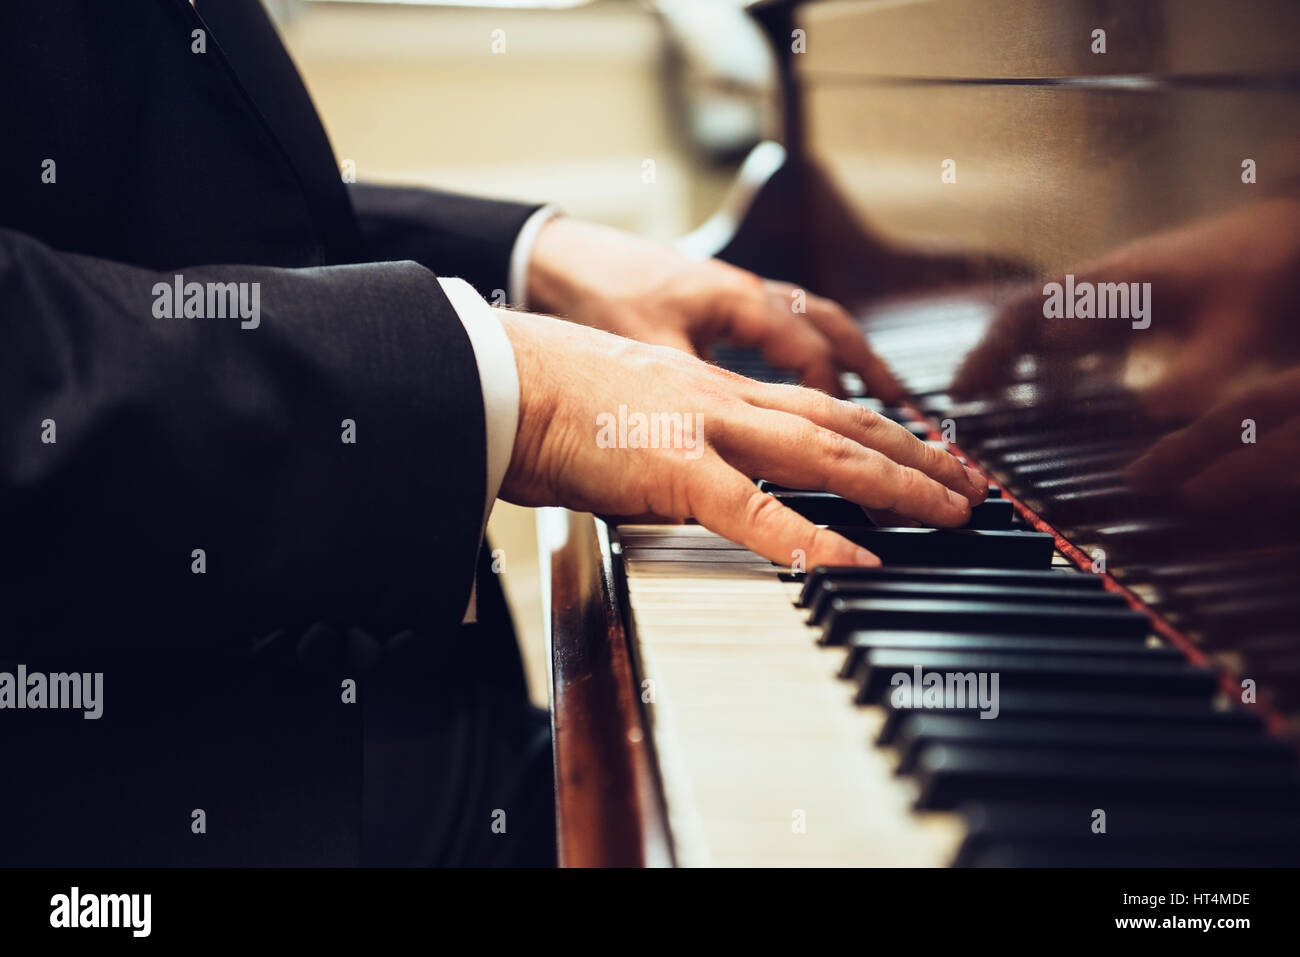 Riproduzione di pianoforte classico. Musicista professionista pianista mani sui tasti di pianoforte. Foto Stock